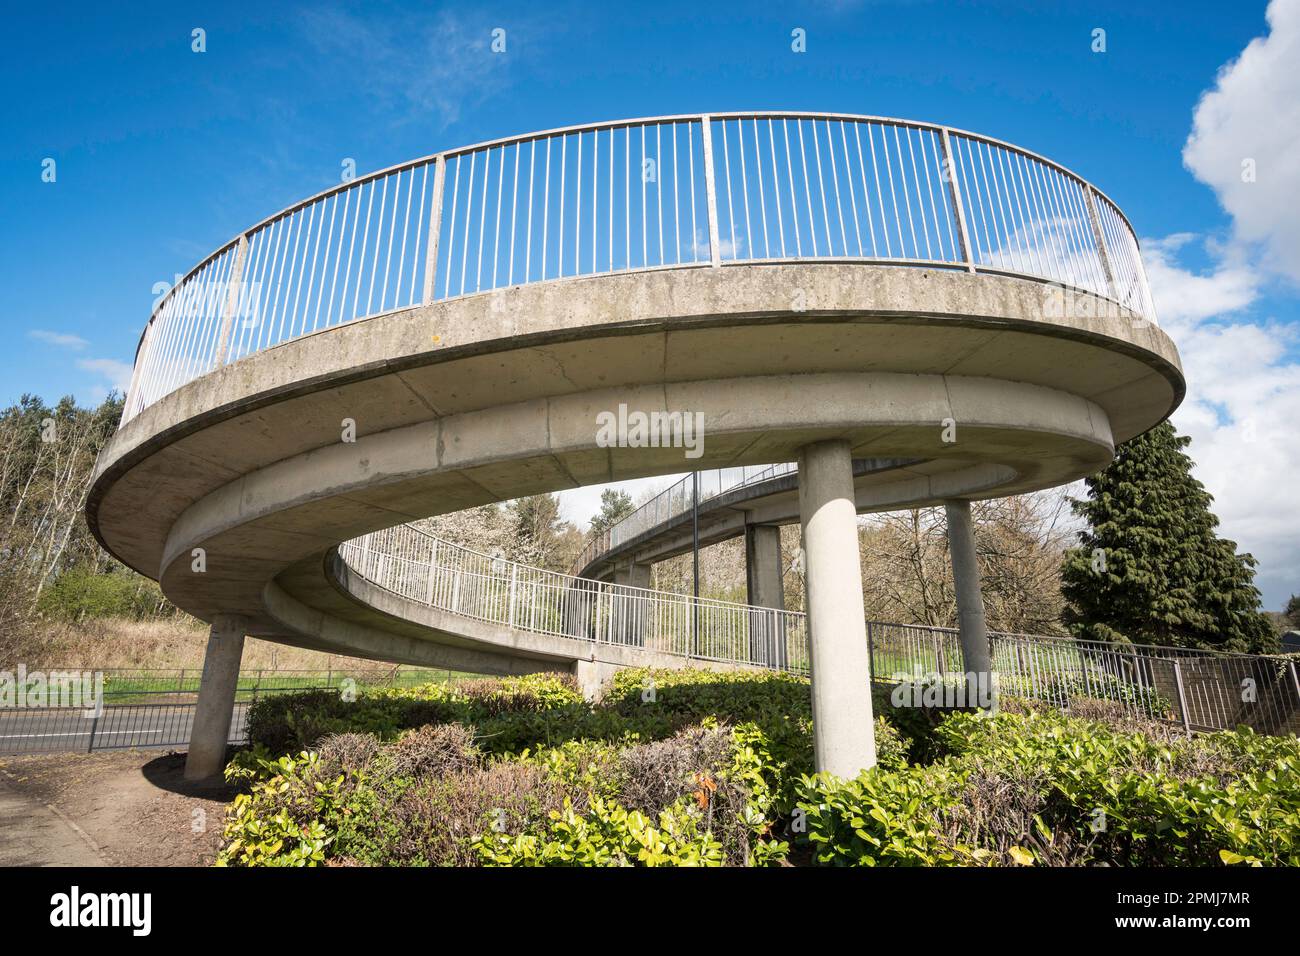 Eine spiralförmige Fußgängerbrücke aus Stahlbeton in Fatfield, Washington, Nordostengland, Großbritannien Stockfoto